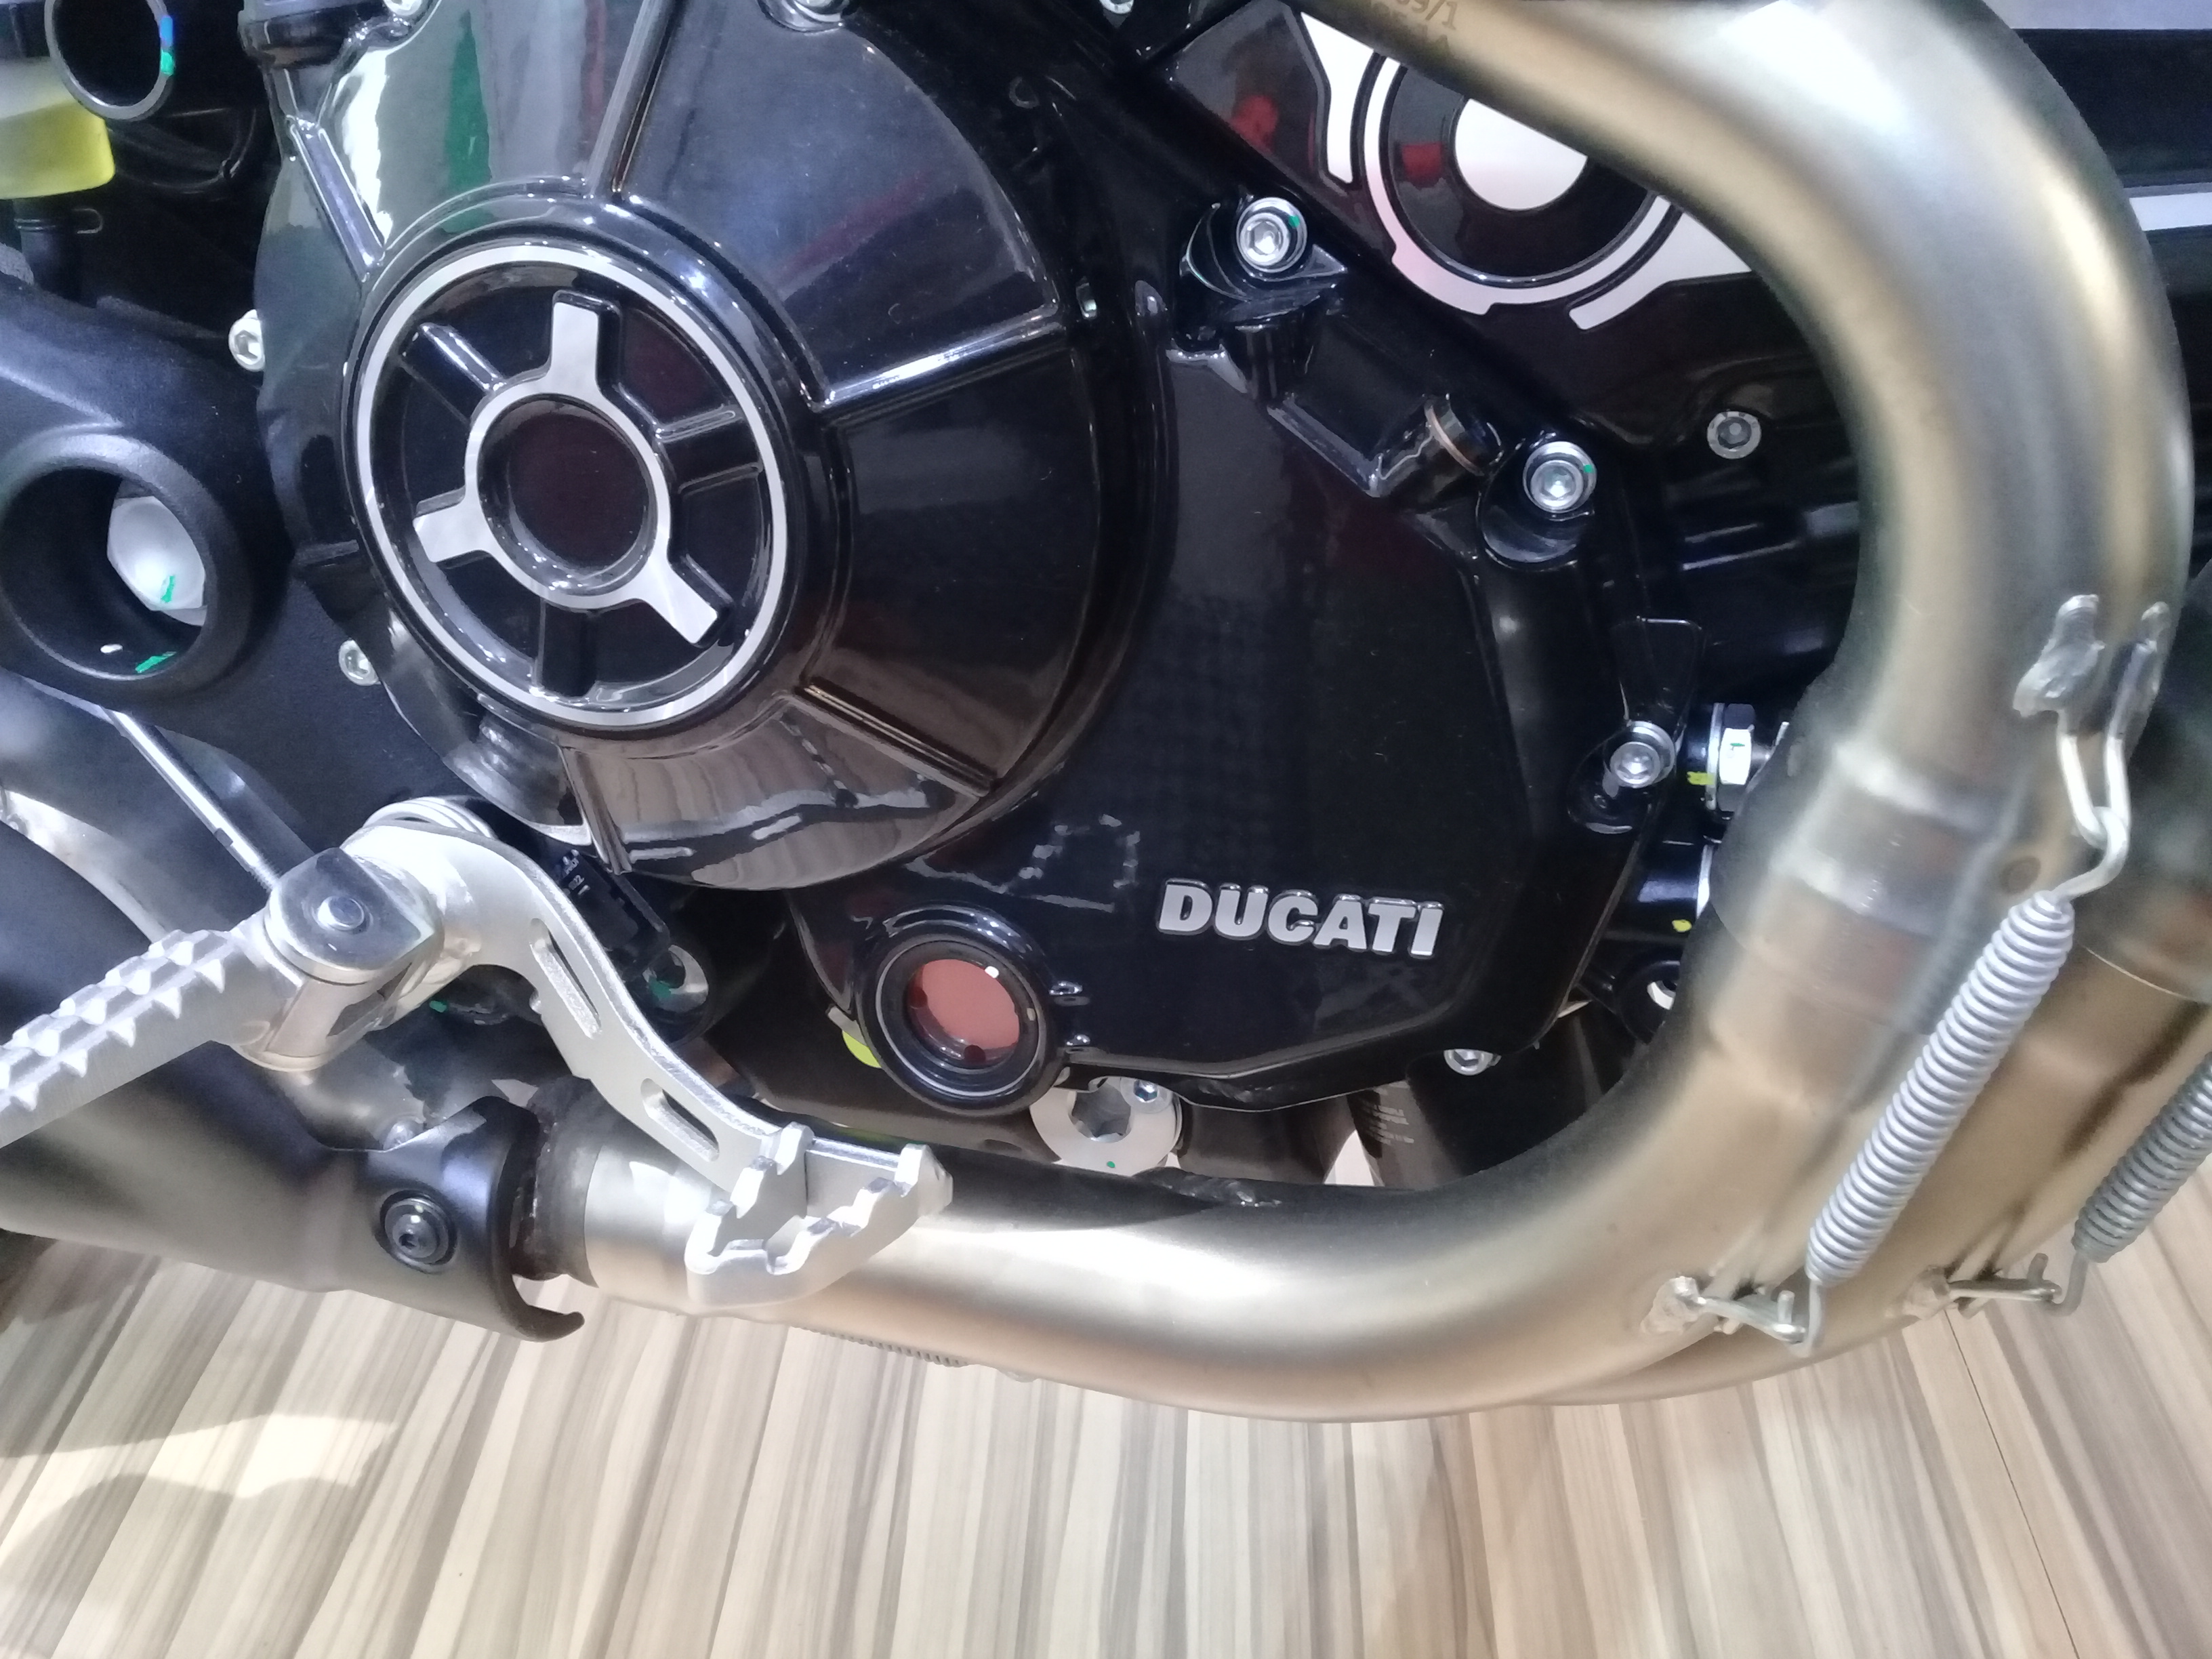 Scrambler Ducati, Info 085773713808